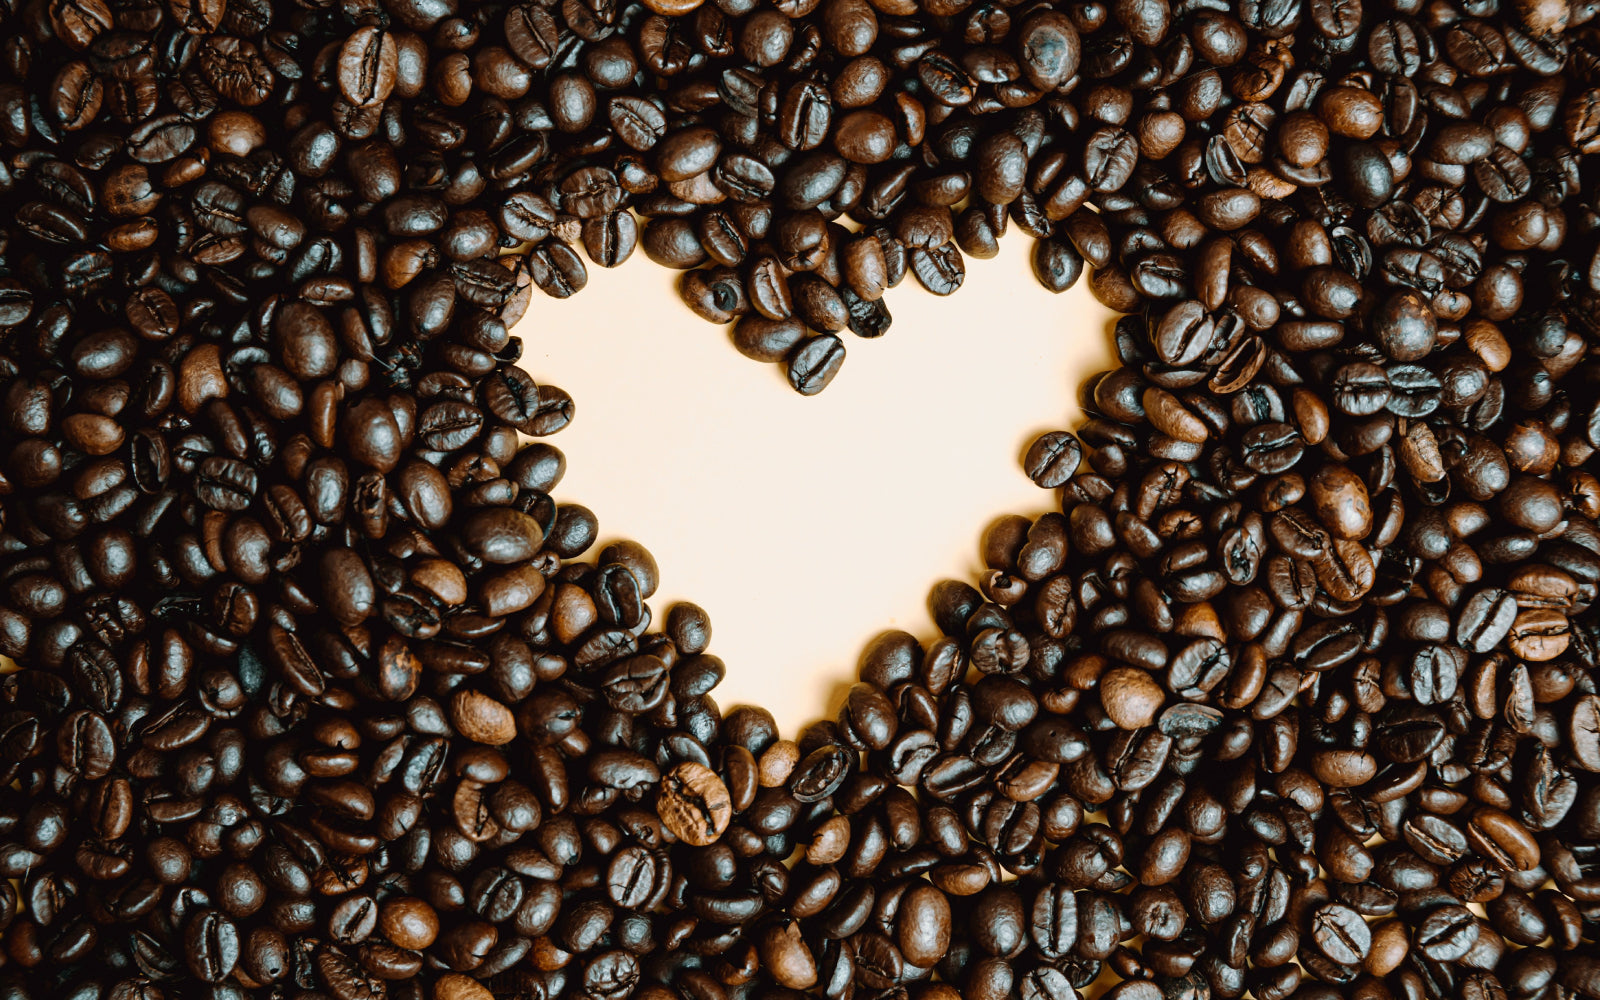 Nauji Coffeebrewer kavos rinkiniai - dovanų idėjos vestuvėms, išleistuvėms, Tėvo dienai ir kitoms šventėms!